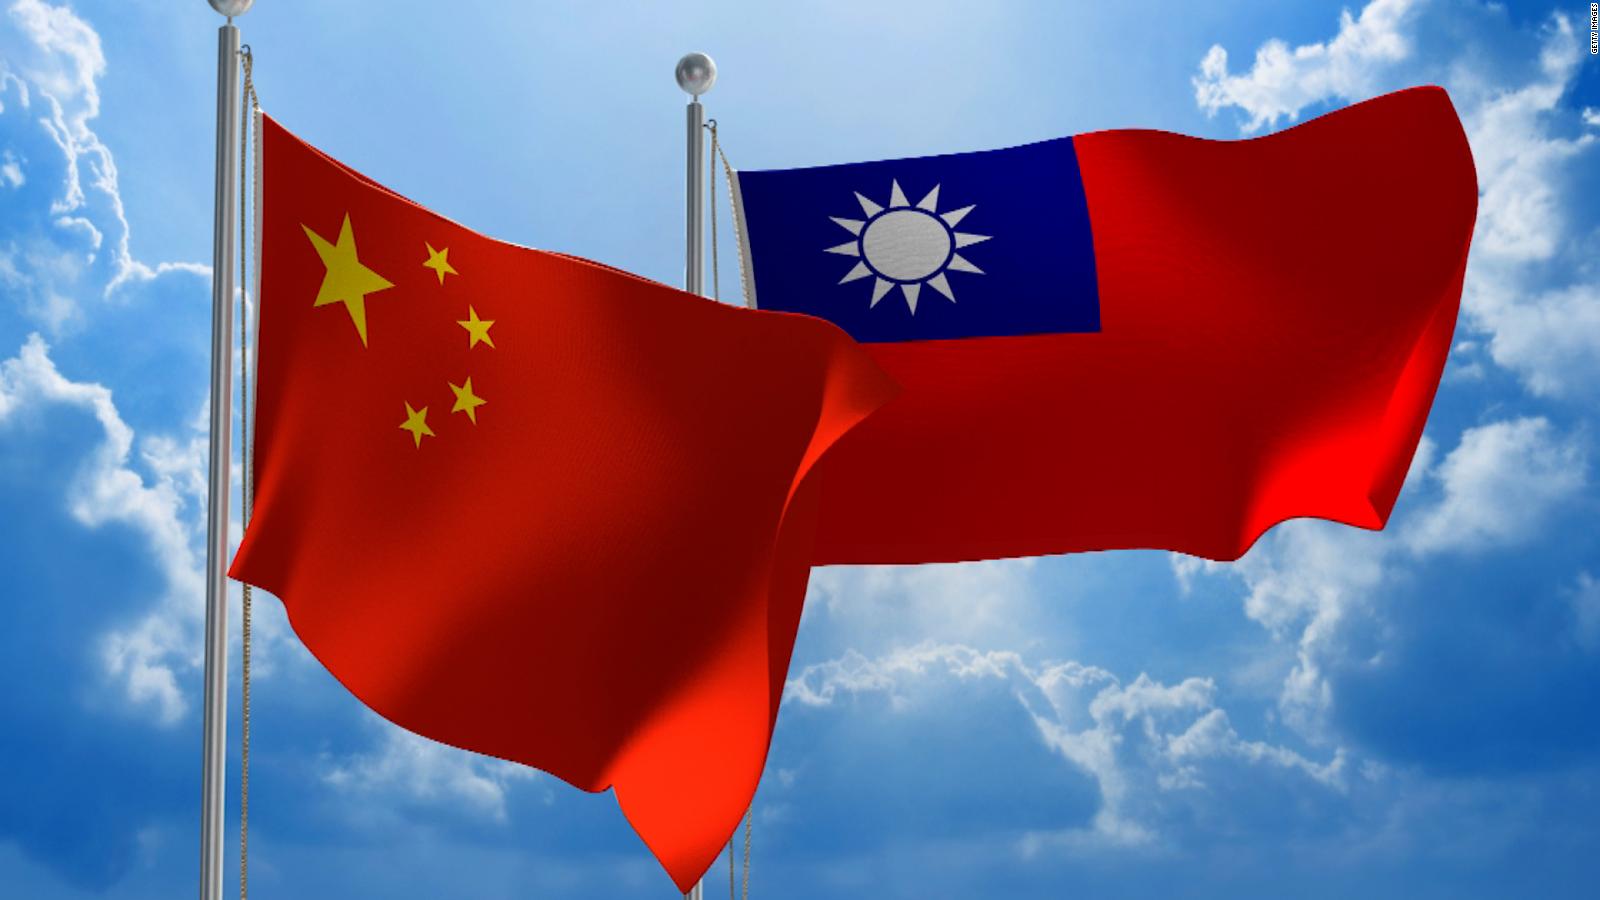 211012130640-china-taiwan-flags-full-169.jpg